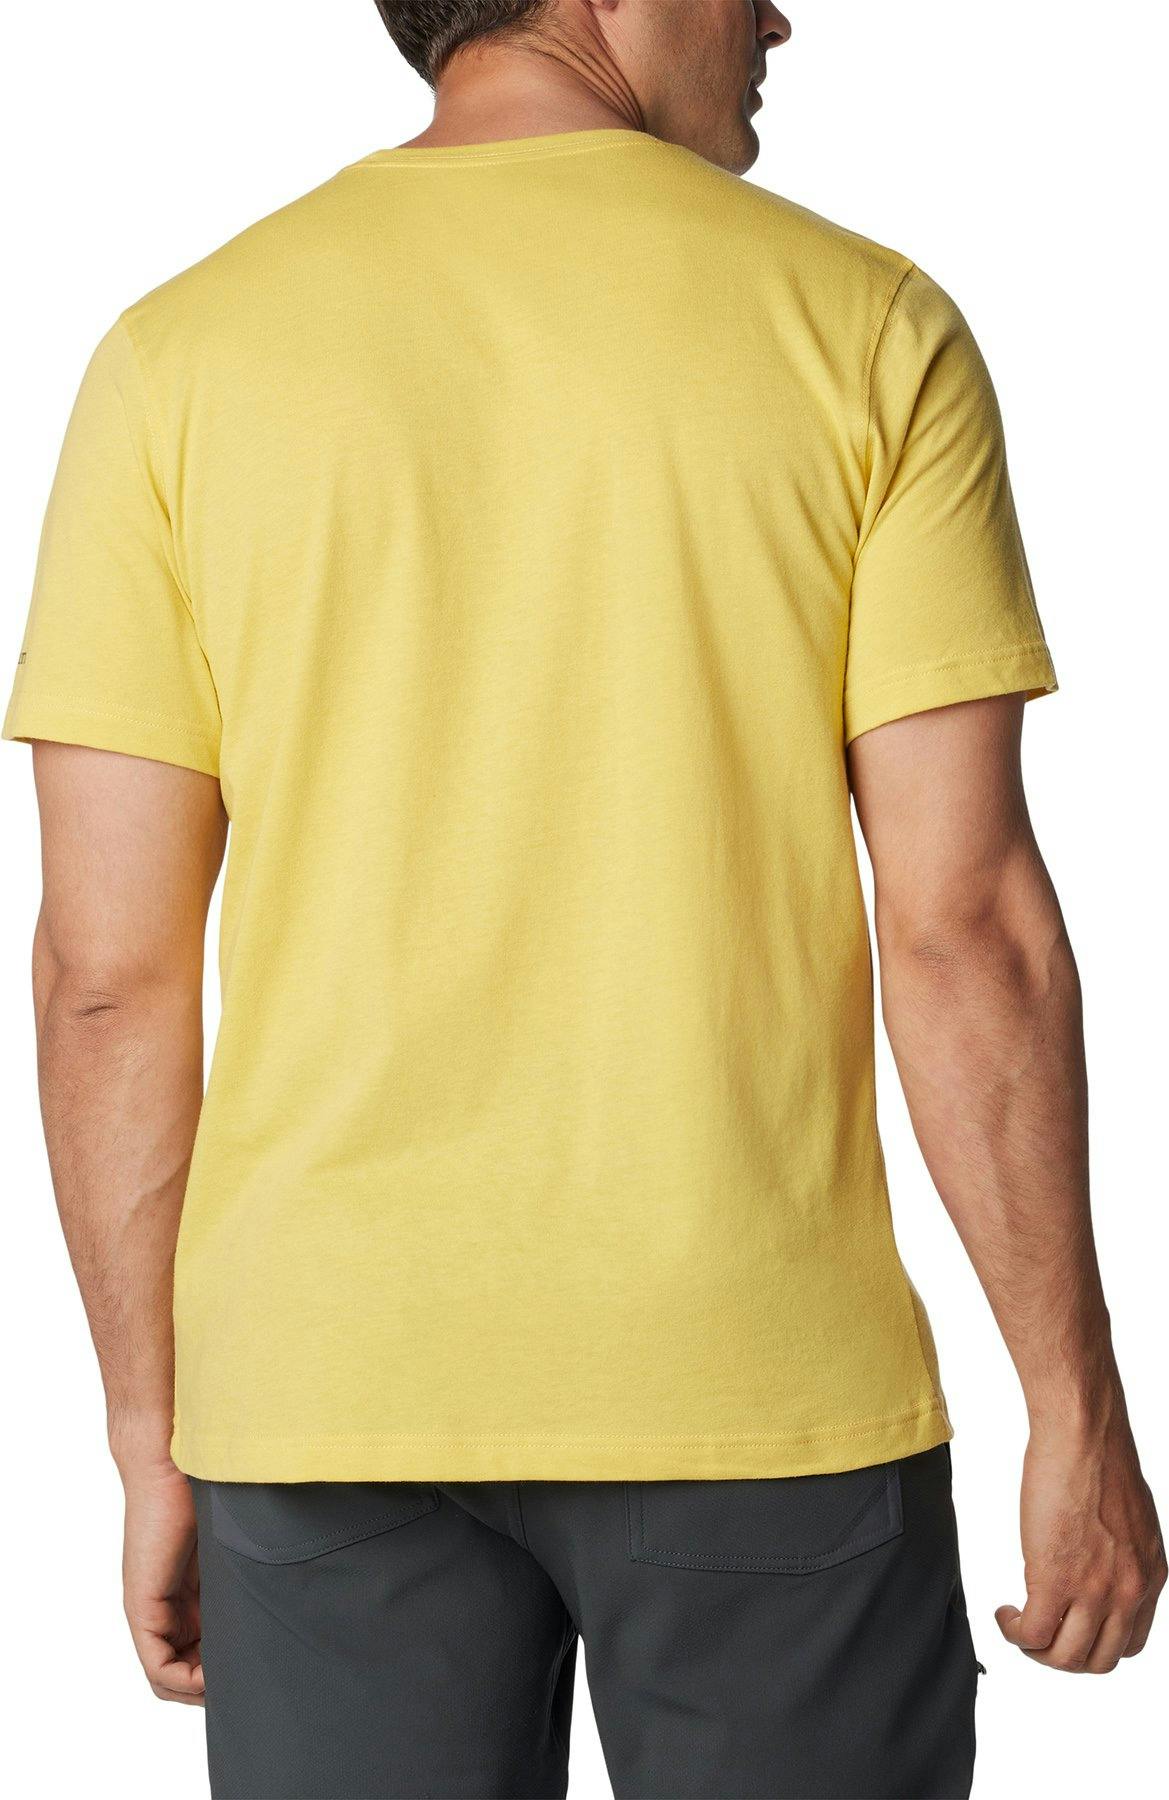 Numéro de l'image de la galerie de produits 6 pour le produit T-shirt à poche Thistletown Hills - Homme